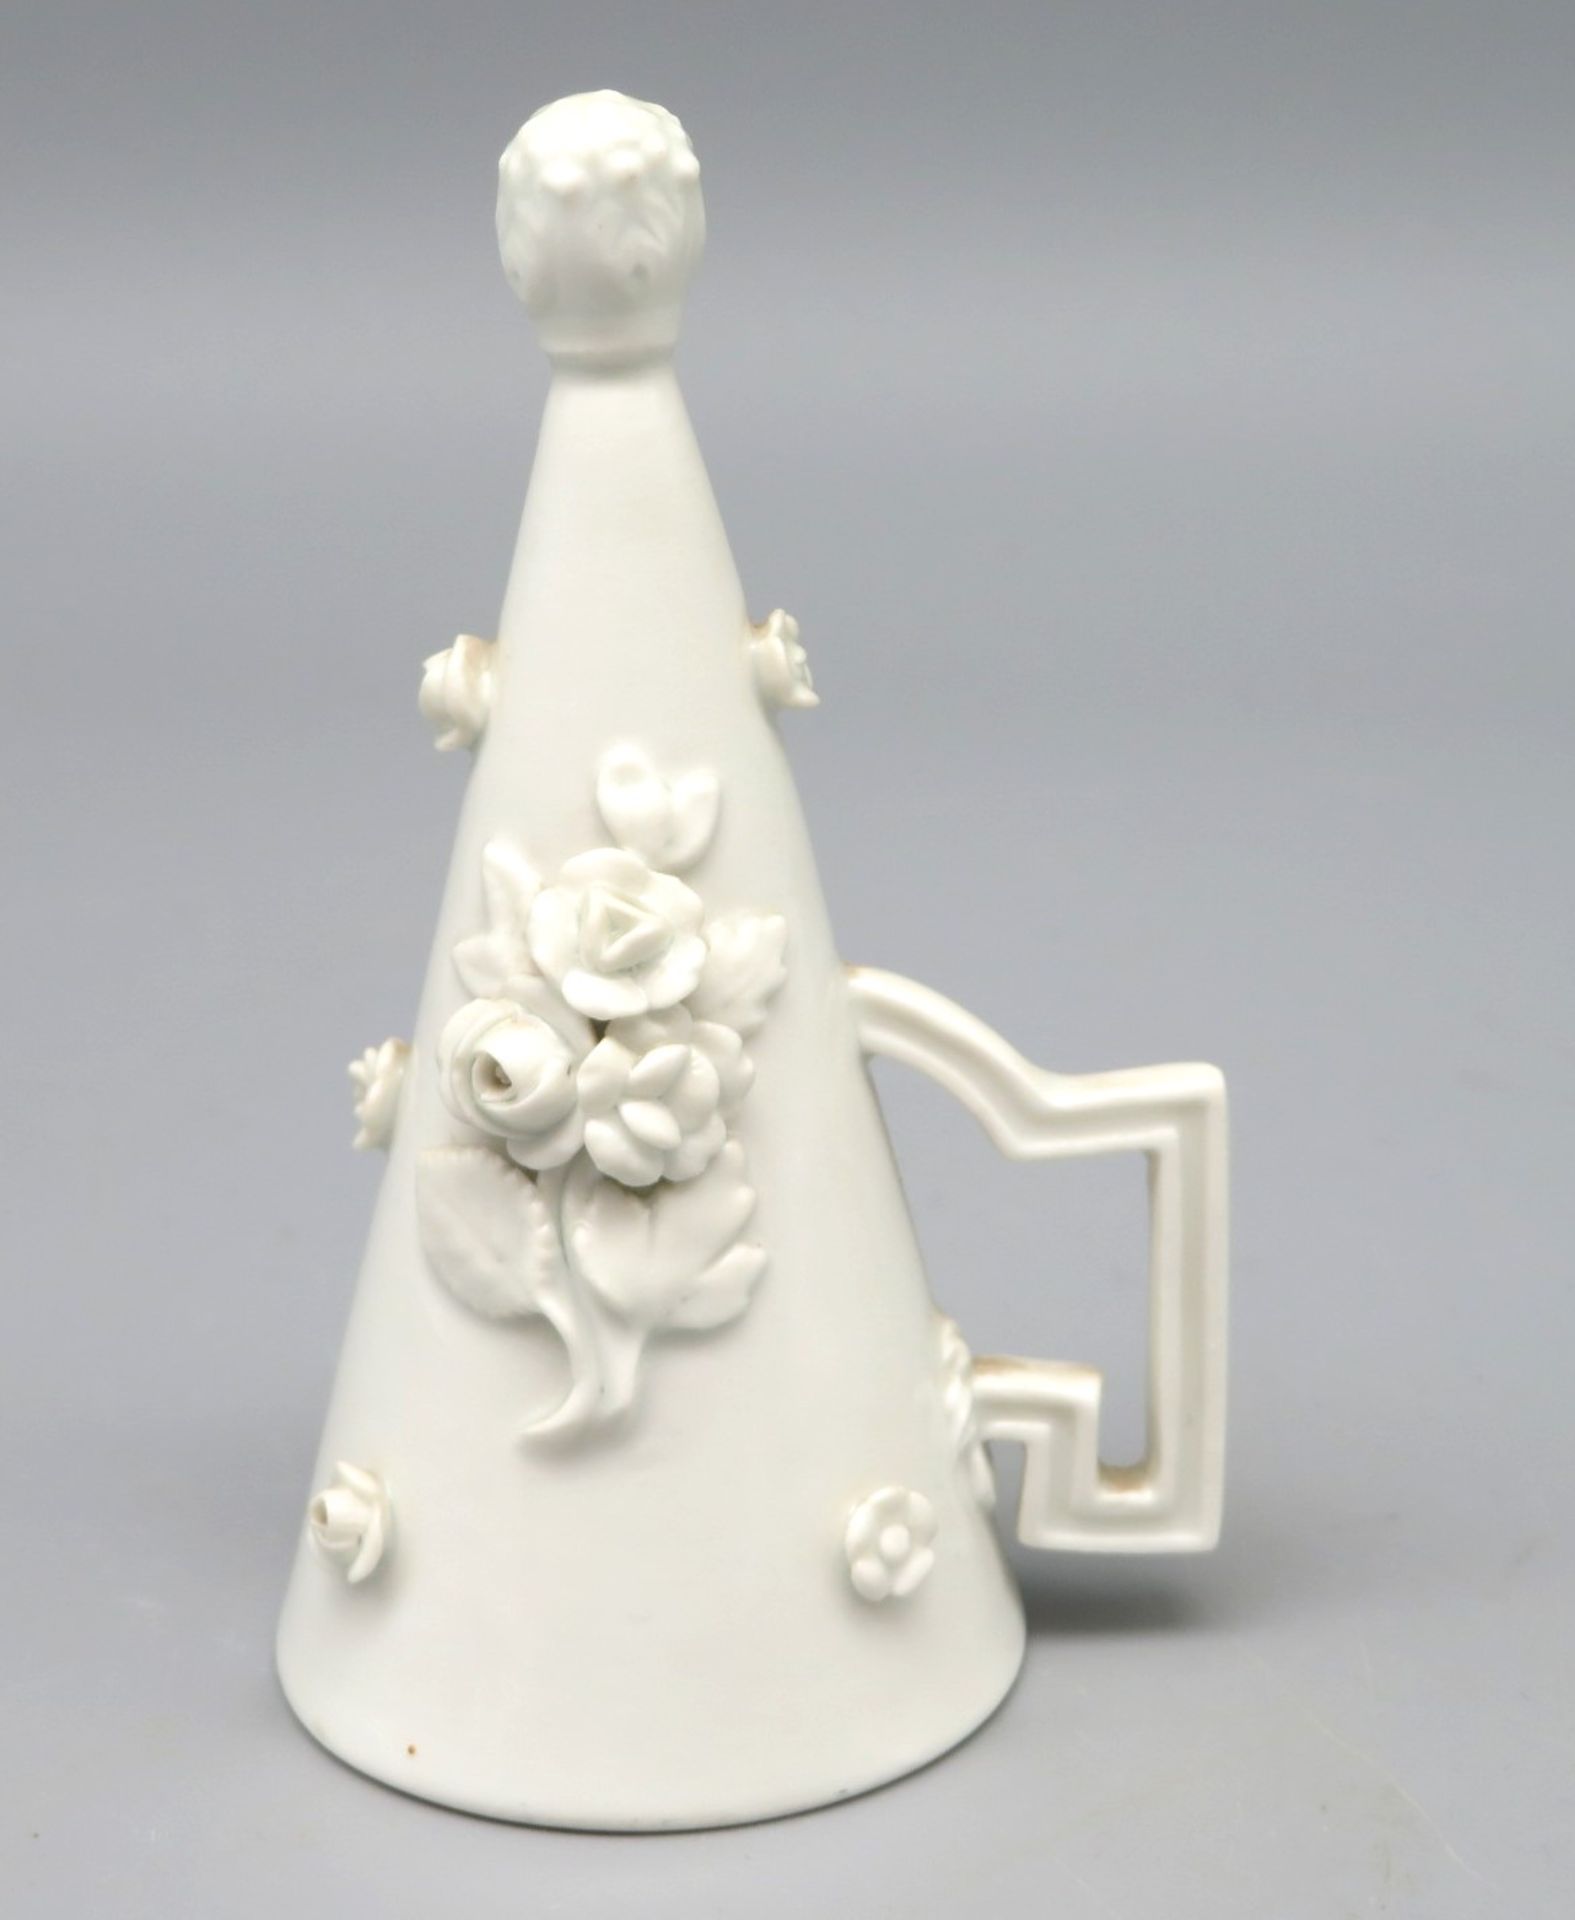 Seltener Kerzenlöscher, Meissen, 19. Jahrhundert, Trichterform mit seitlicher Handhabe, Weißporzell